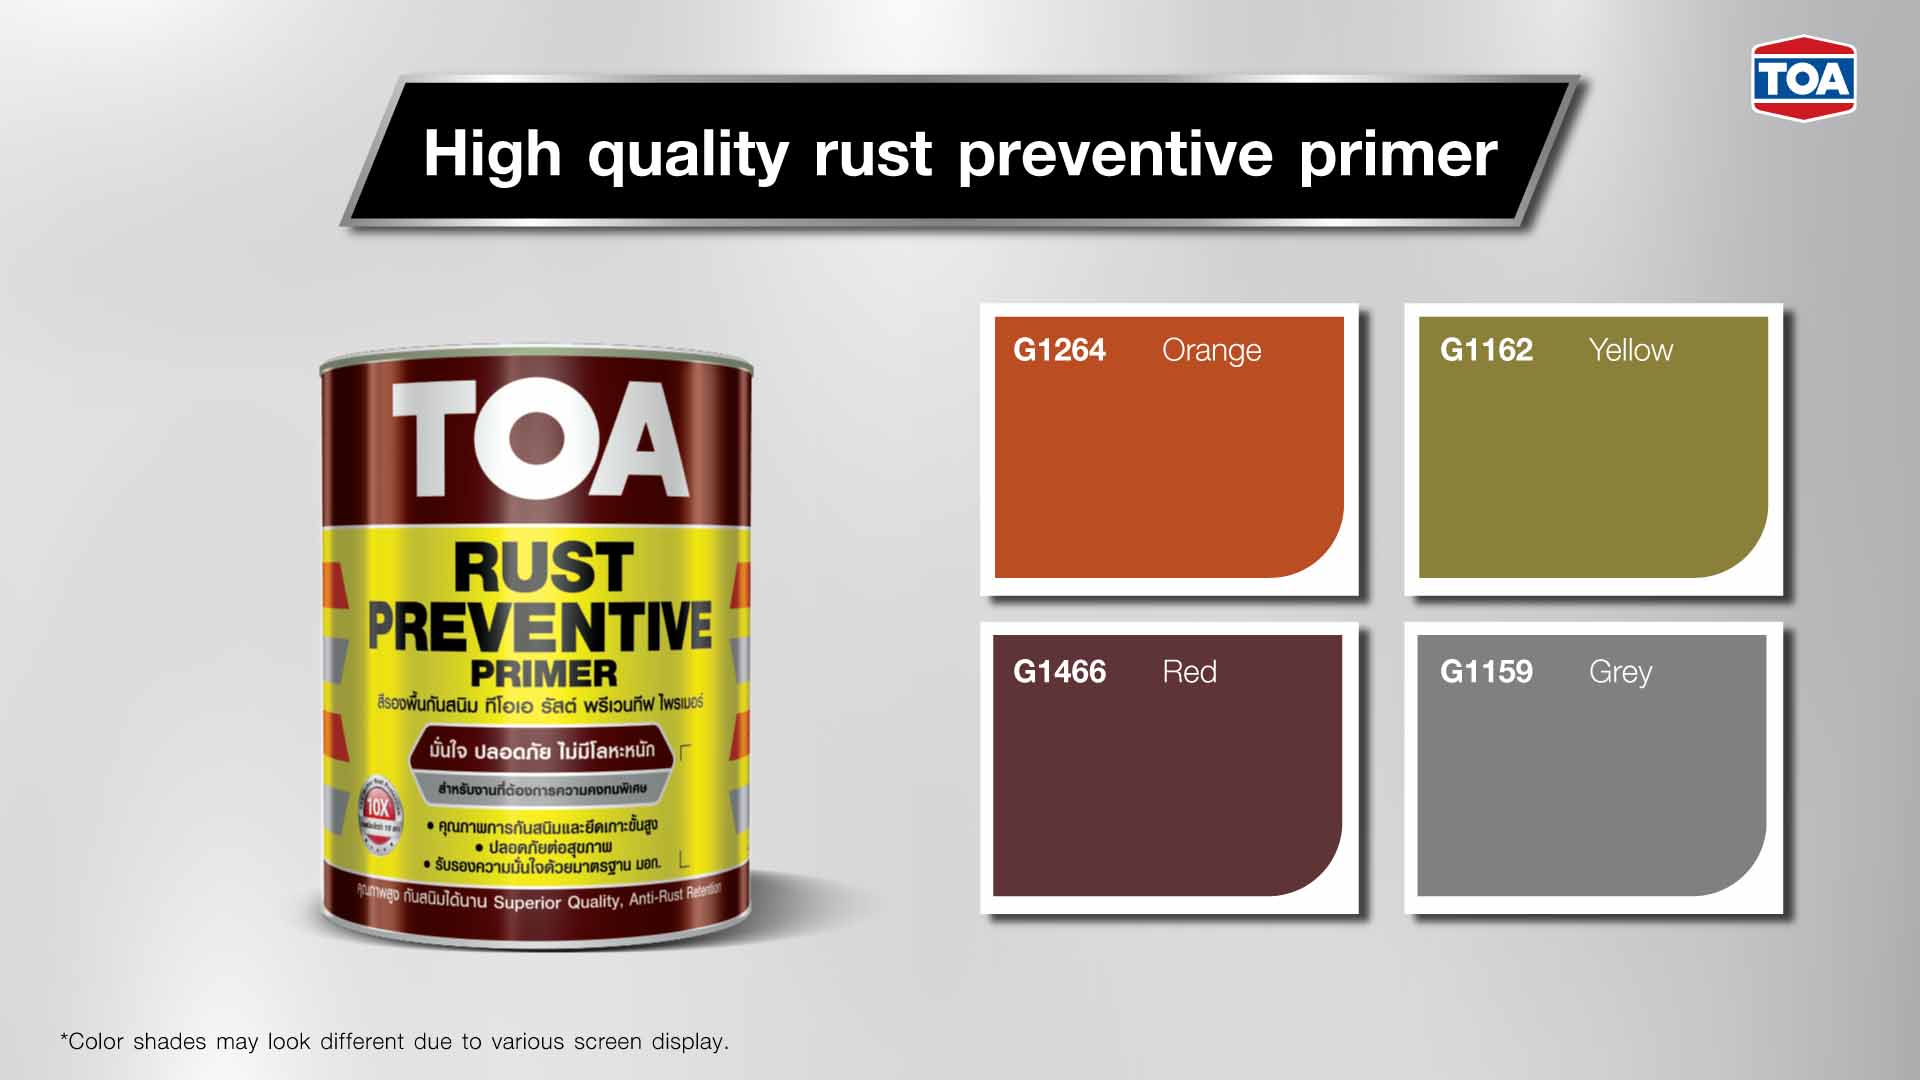 TOA Rust Preventive Primer has 4 colors